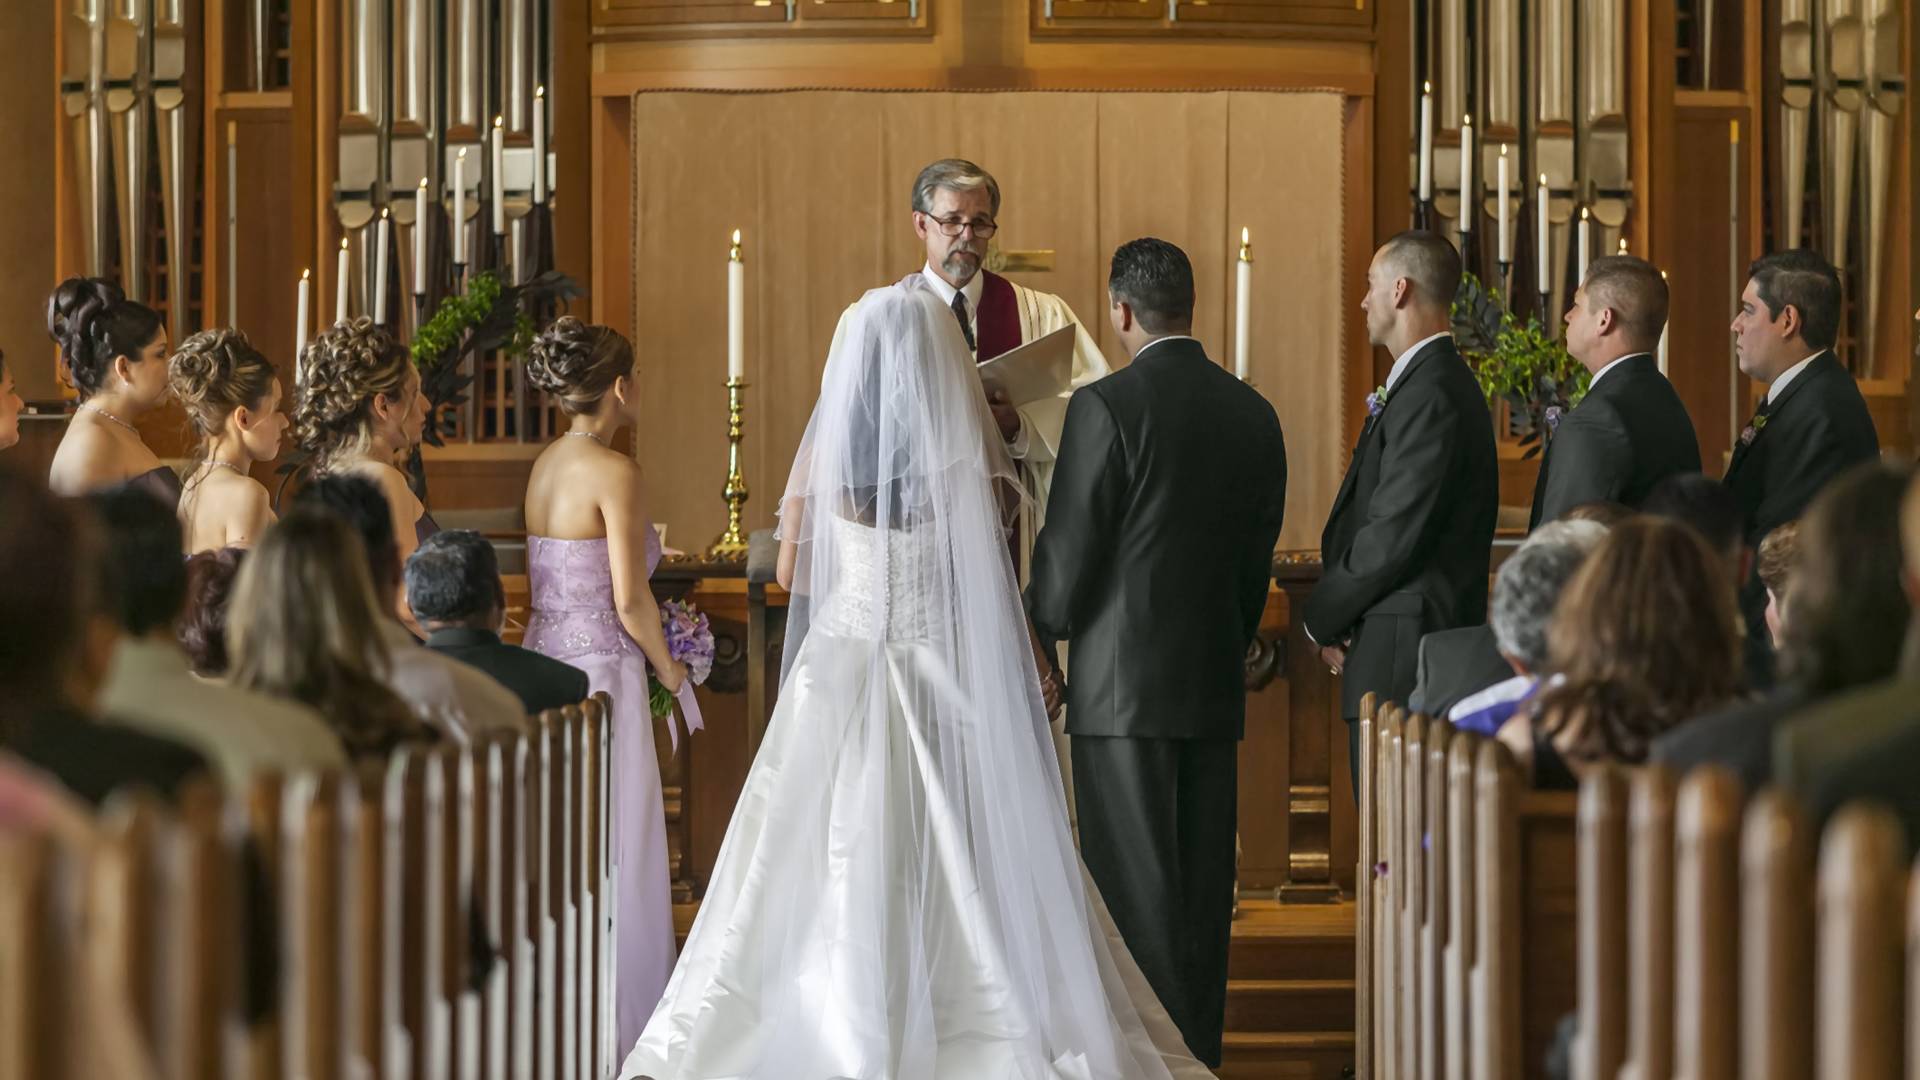 Az esküvőn levetített szexvideóval buktatta le a vőlegény hűtlen menyasszonyát - videó